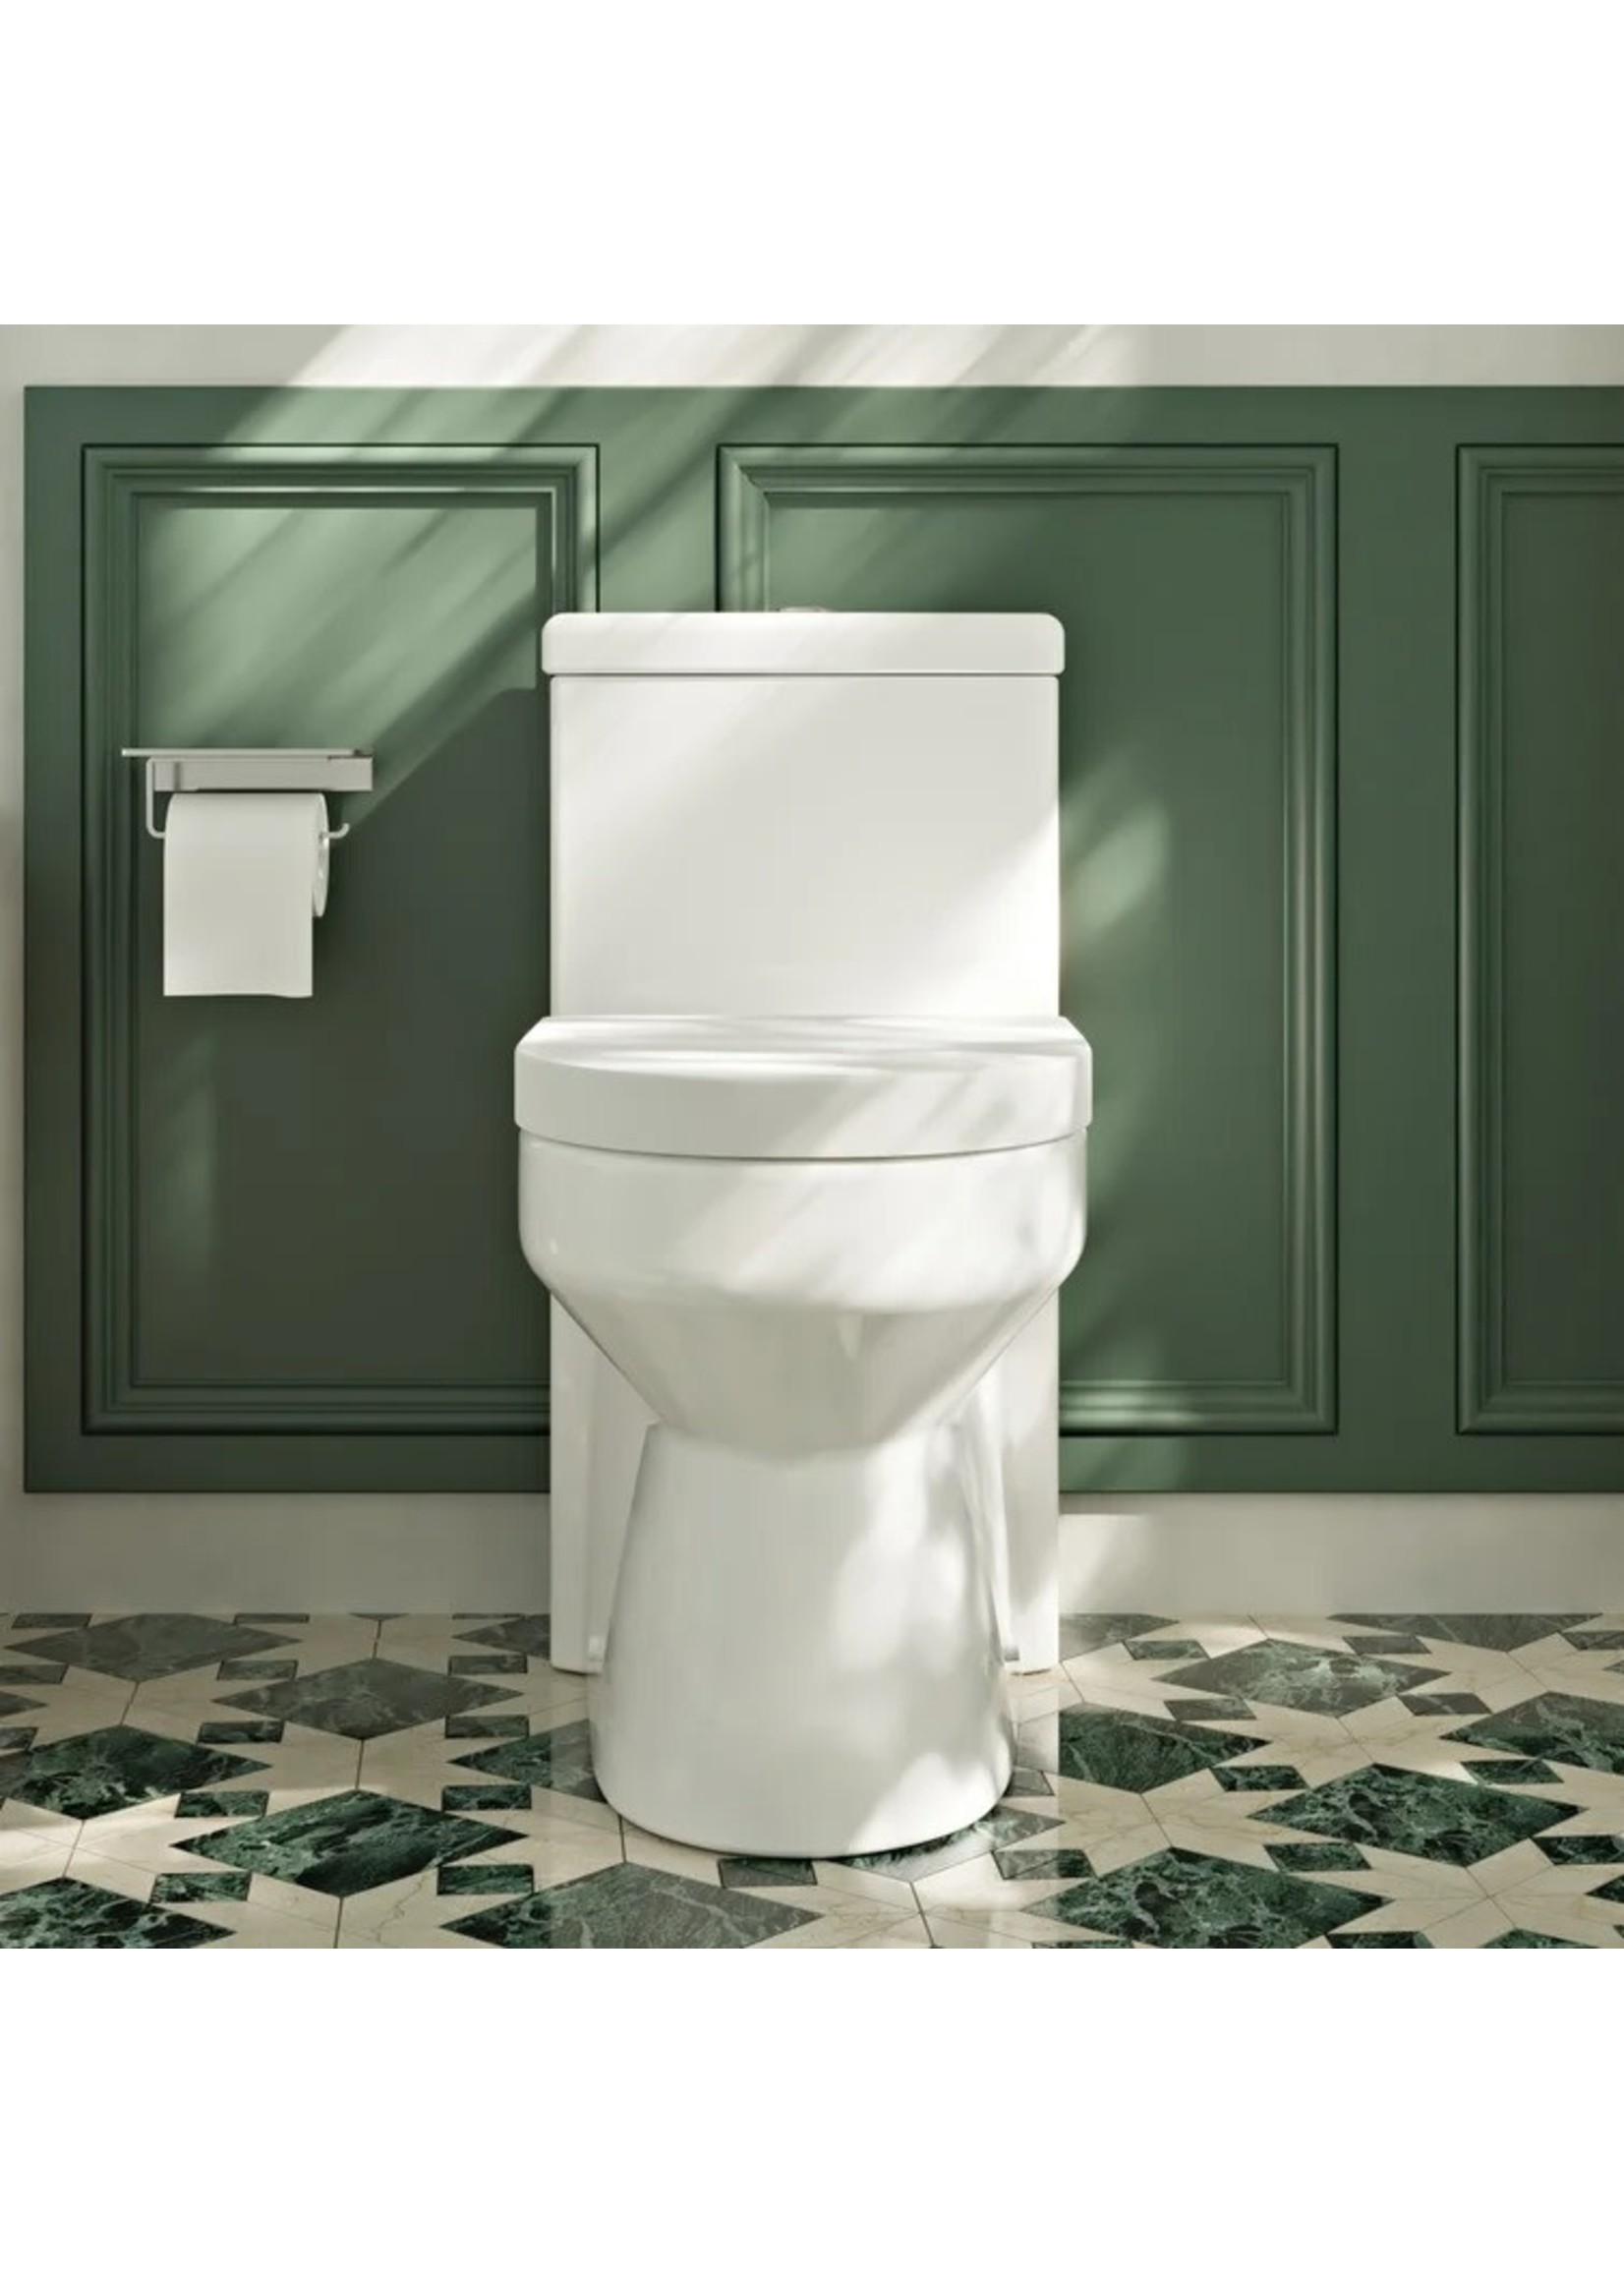 *Yodar Dual-Flush Elongated one-Piece Toilet - White